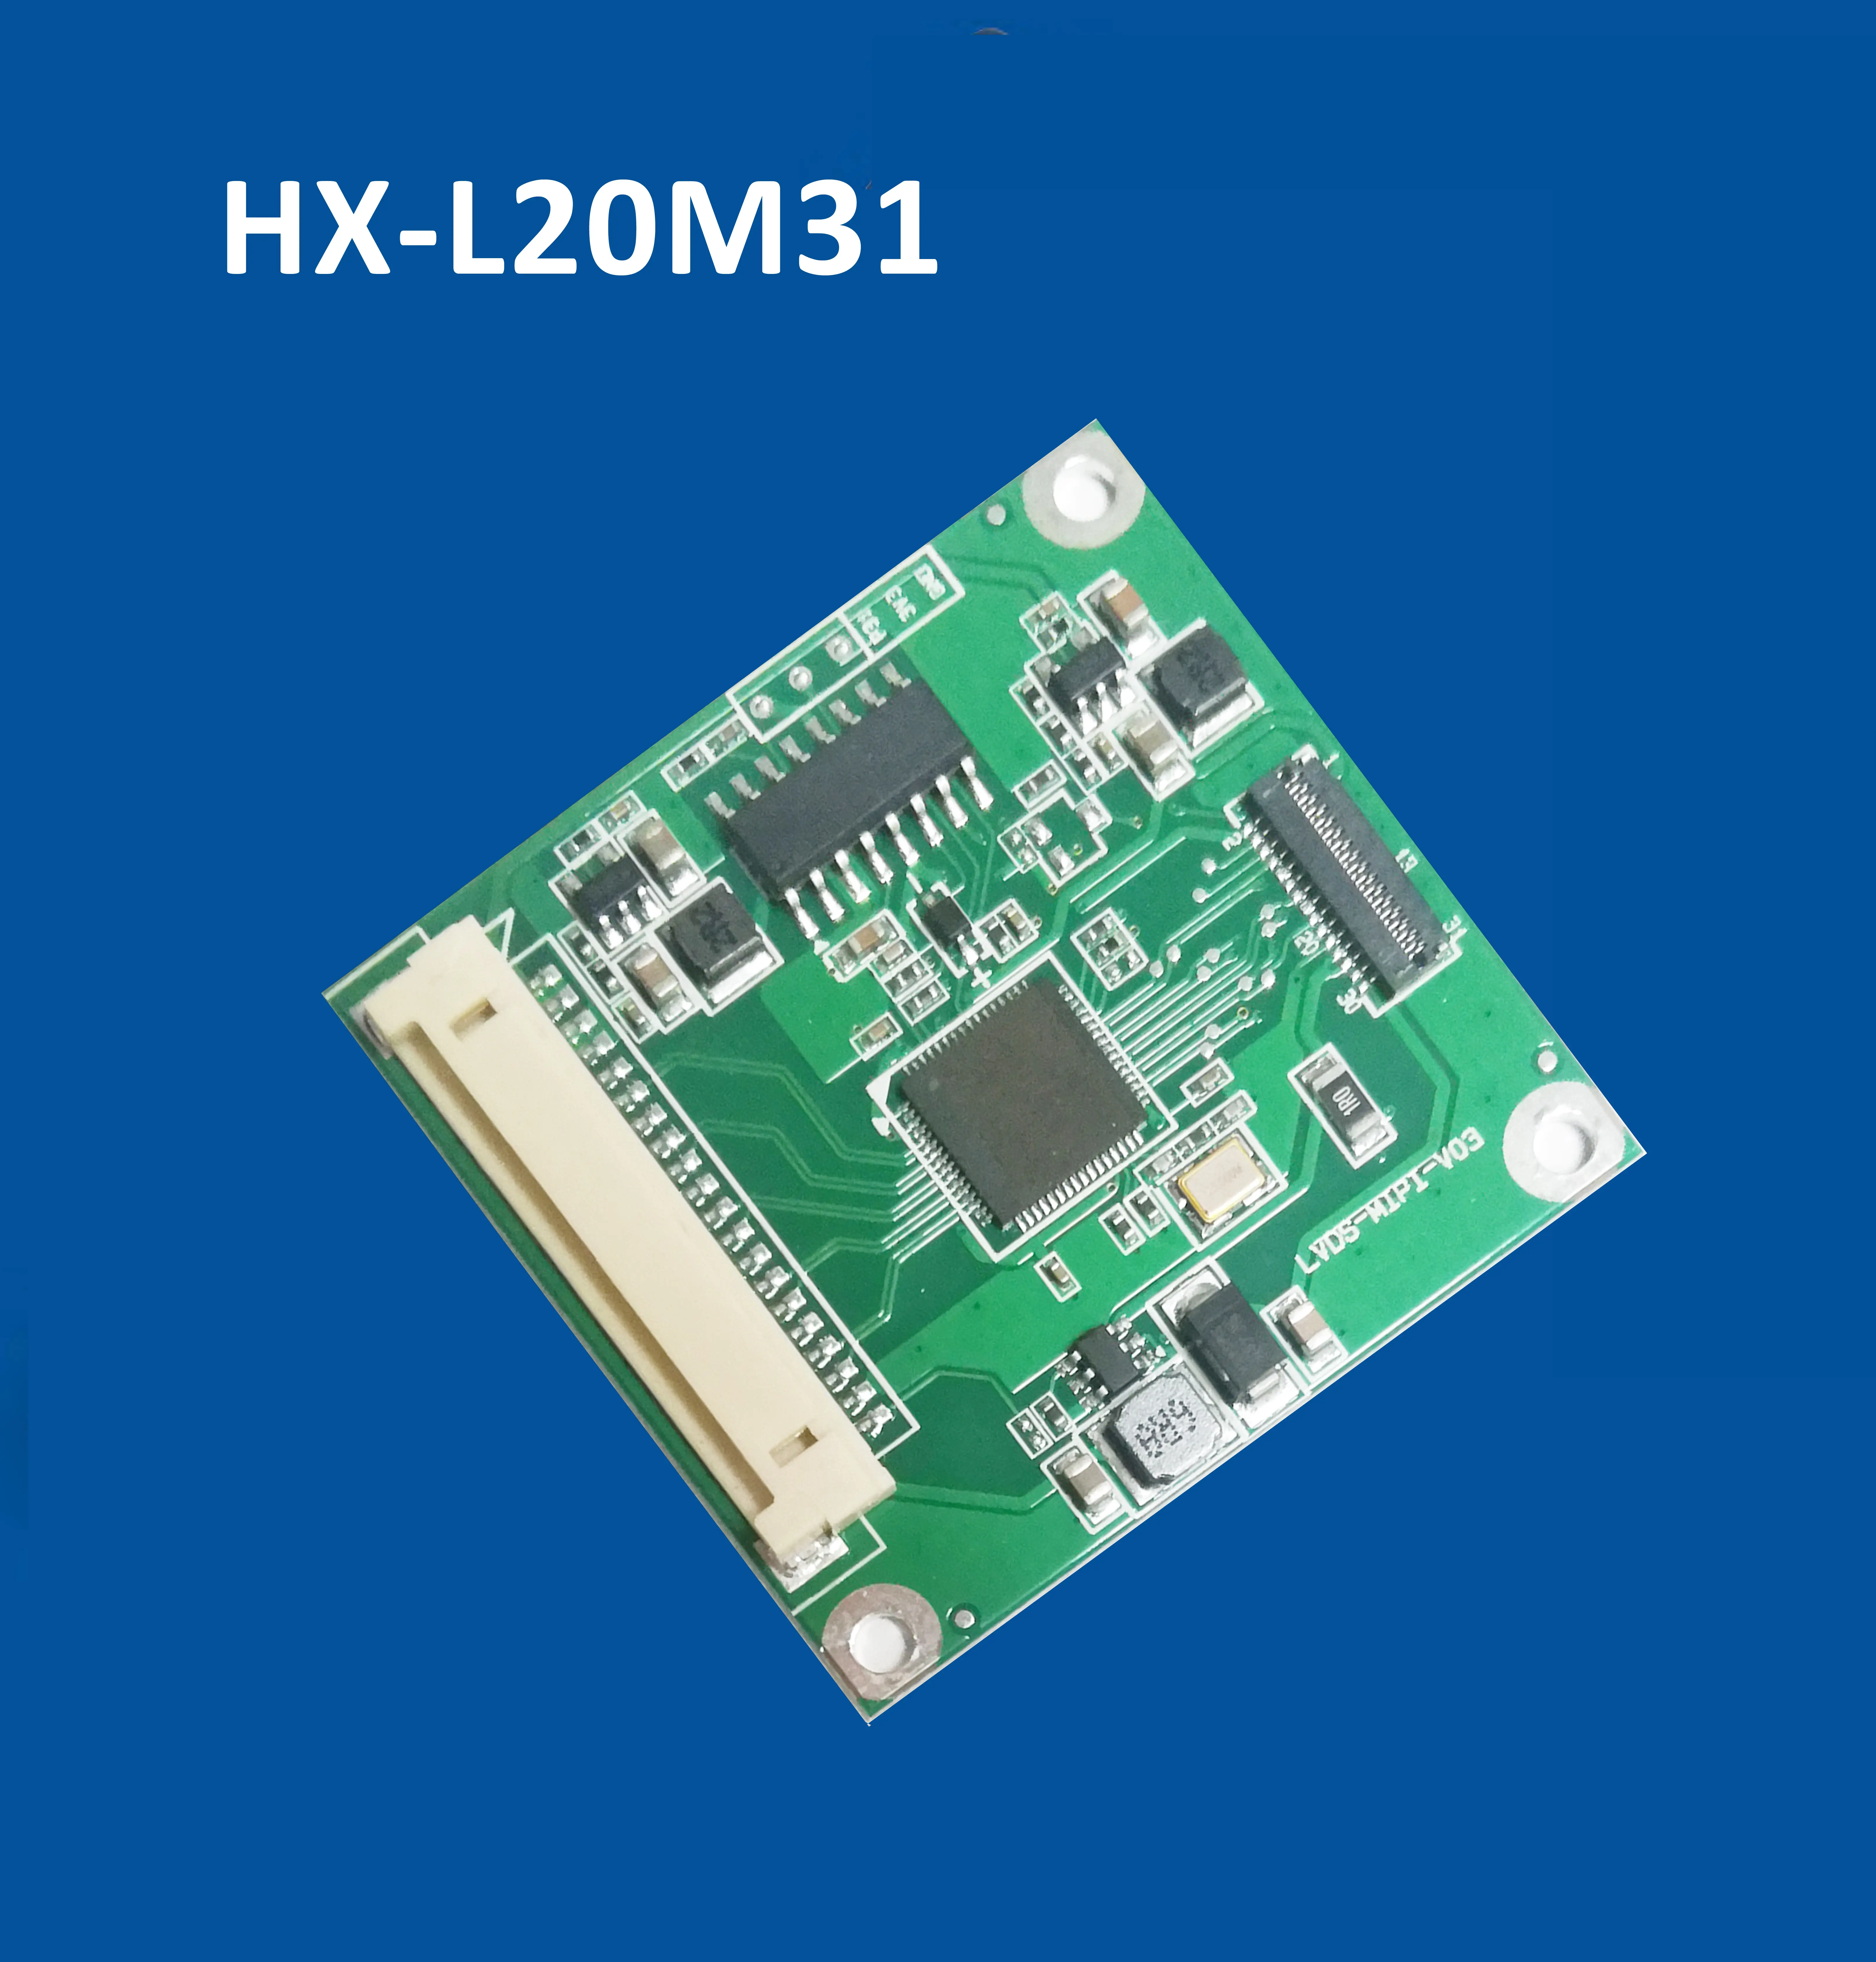 HX-L20M31 LVDS PARA MIPI placa ponte conversor com saída LVDS de entrada e MIPI